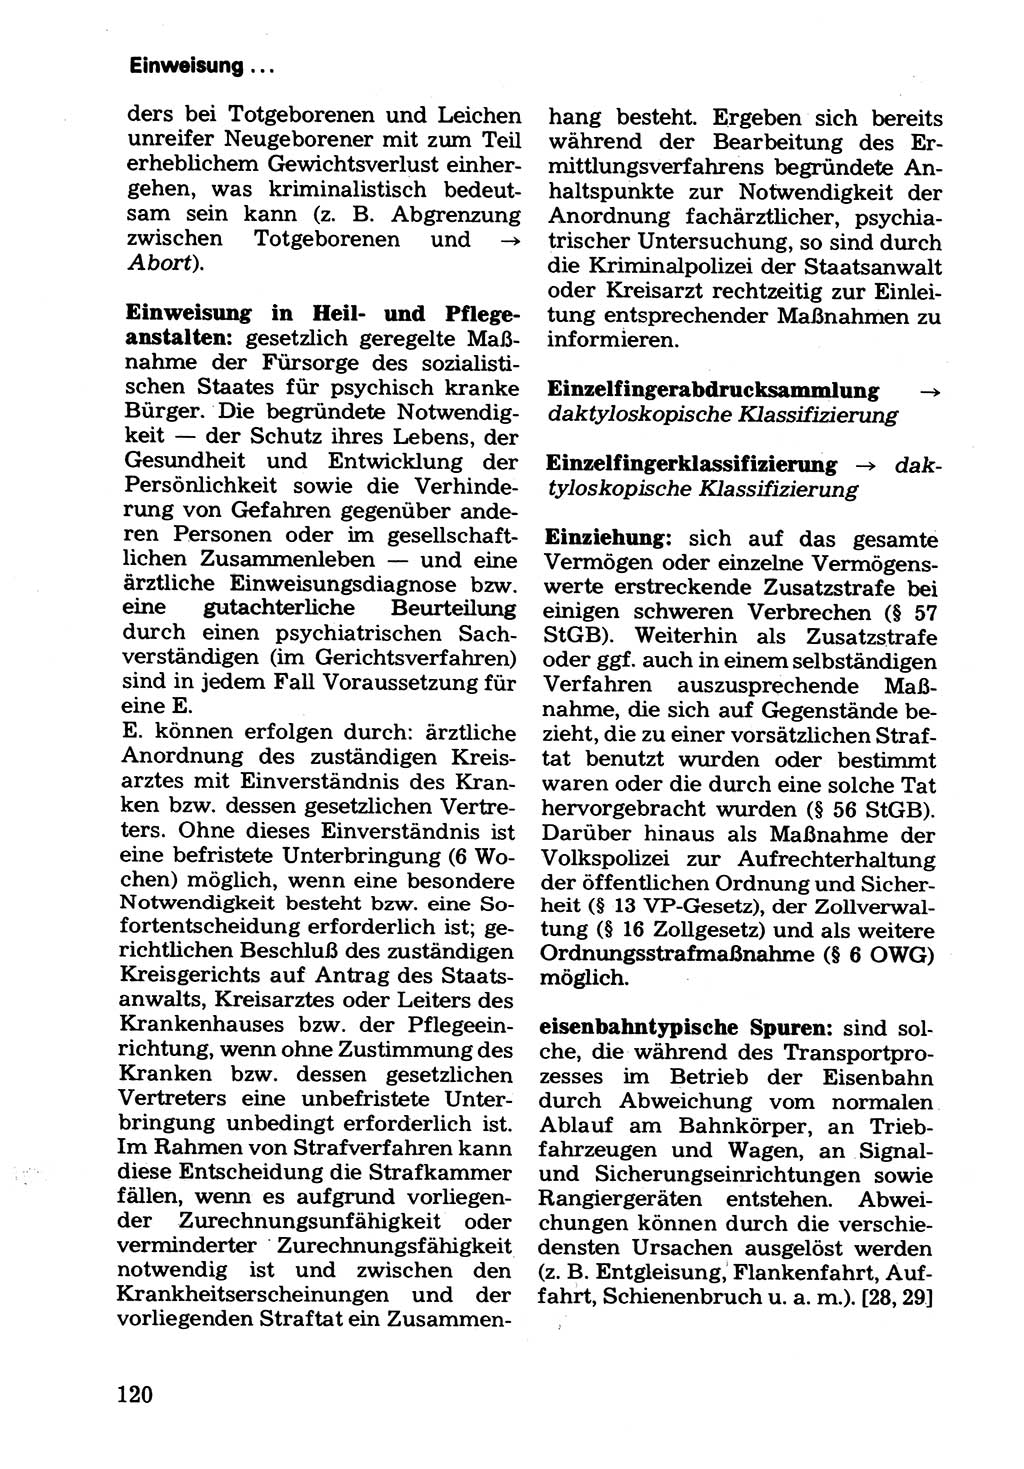 Wörterbuch der sozialistischen Kriminalistik [Deutsche Demokratische Republik (DDR)] 1981, Seite 120 (Wb. soz. Krim. DDR 1981, S. 120)